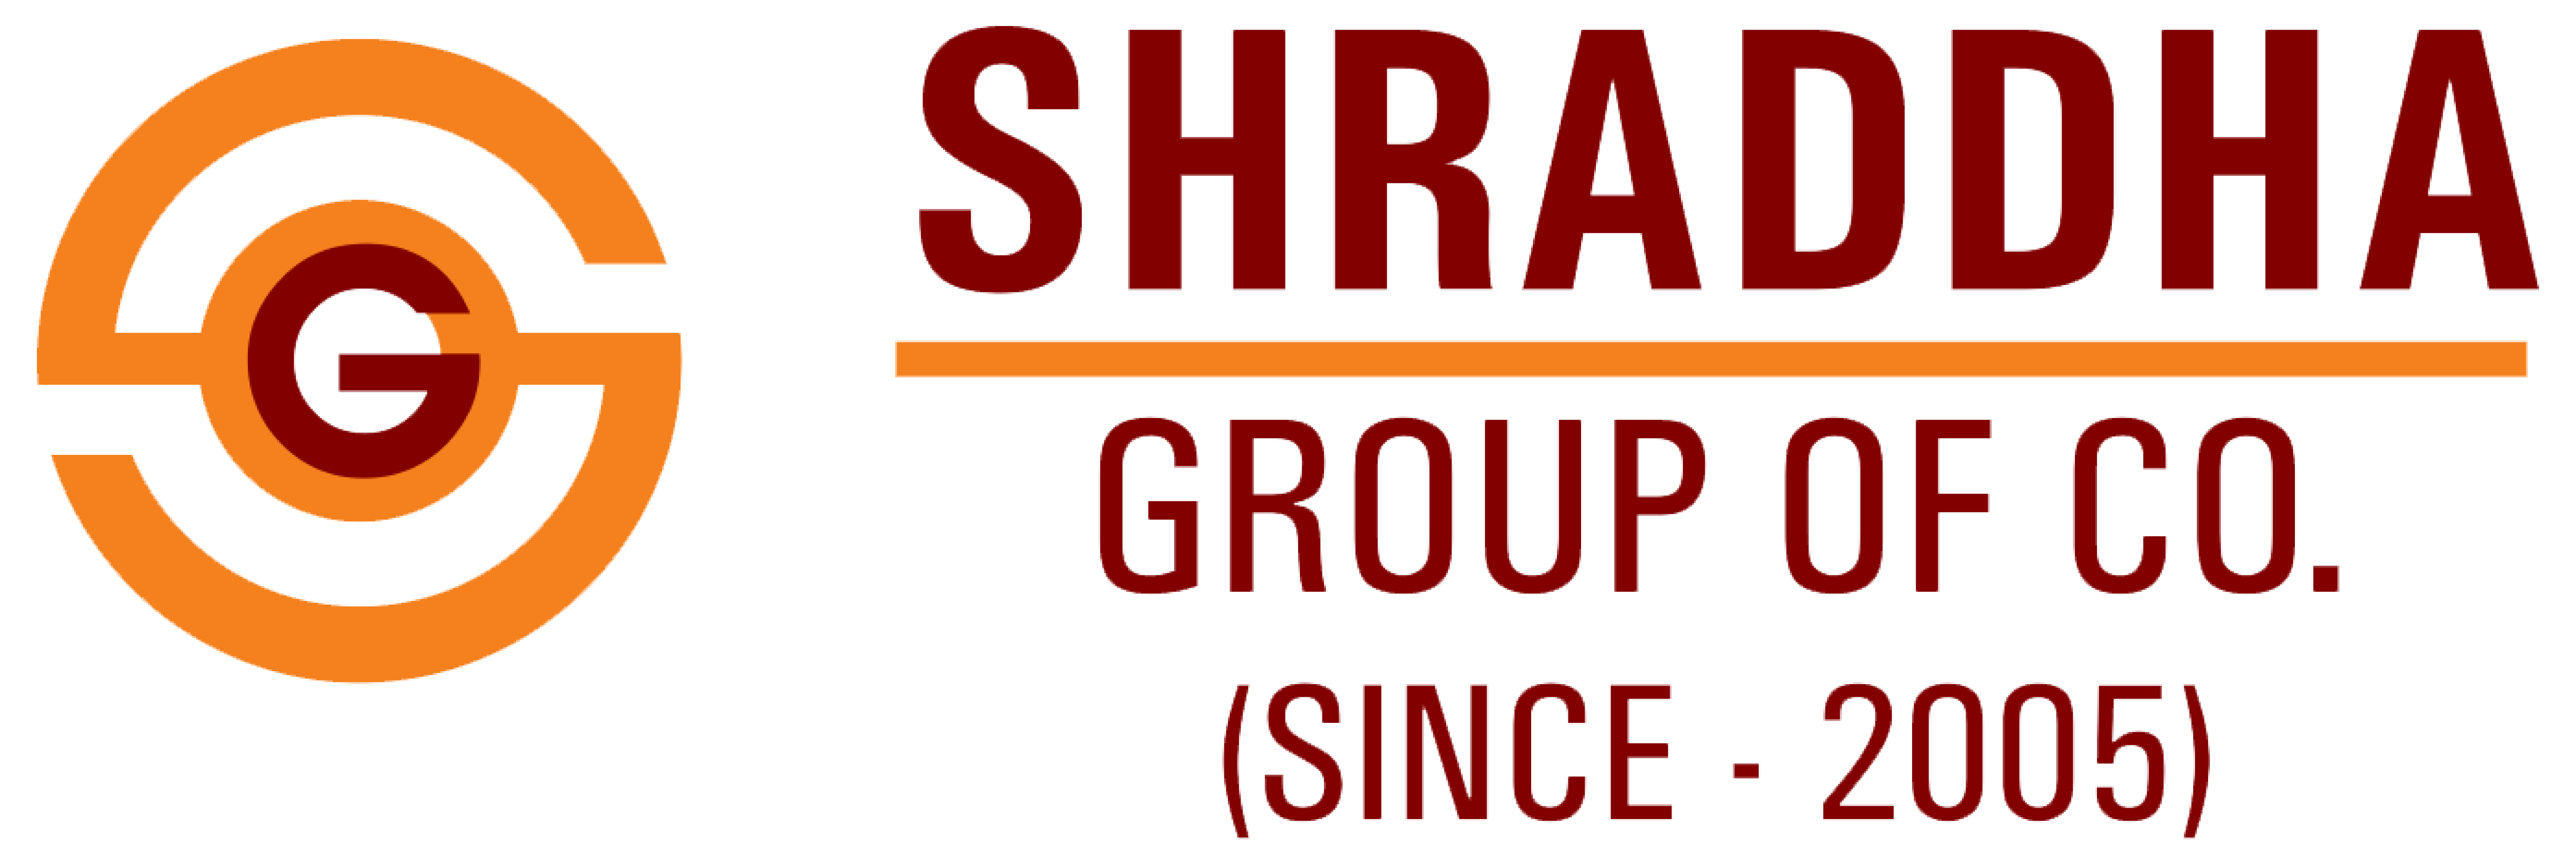 Shraddha Group